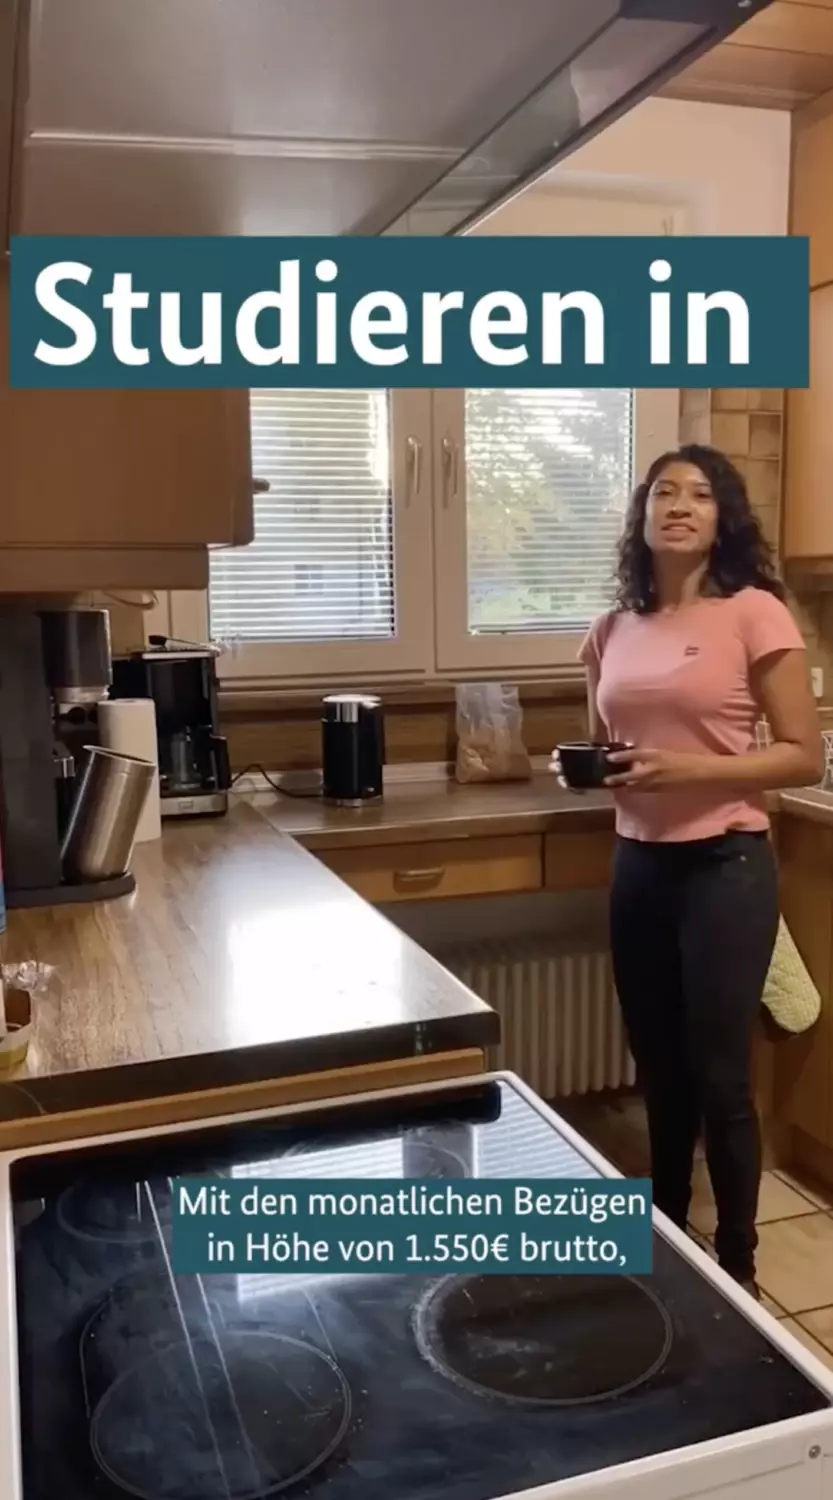 Videoausschnitt: Eine junge Frau steht in einer Küche. Darauf der Text: Studieren in